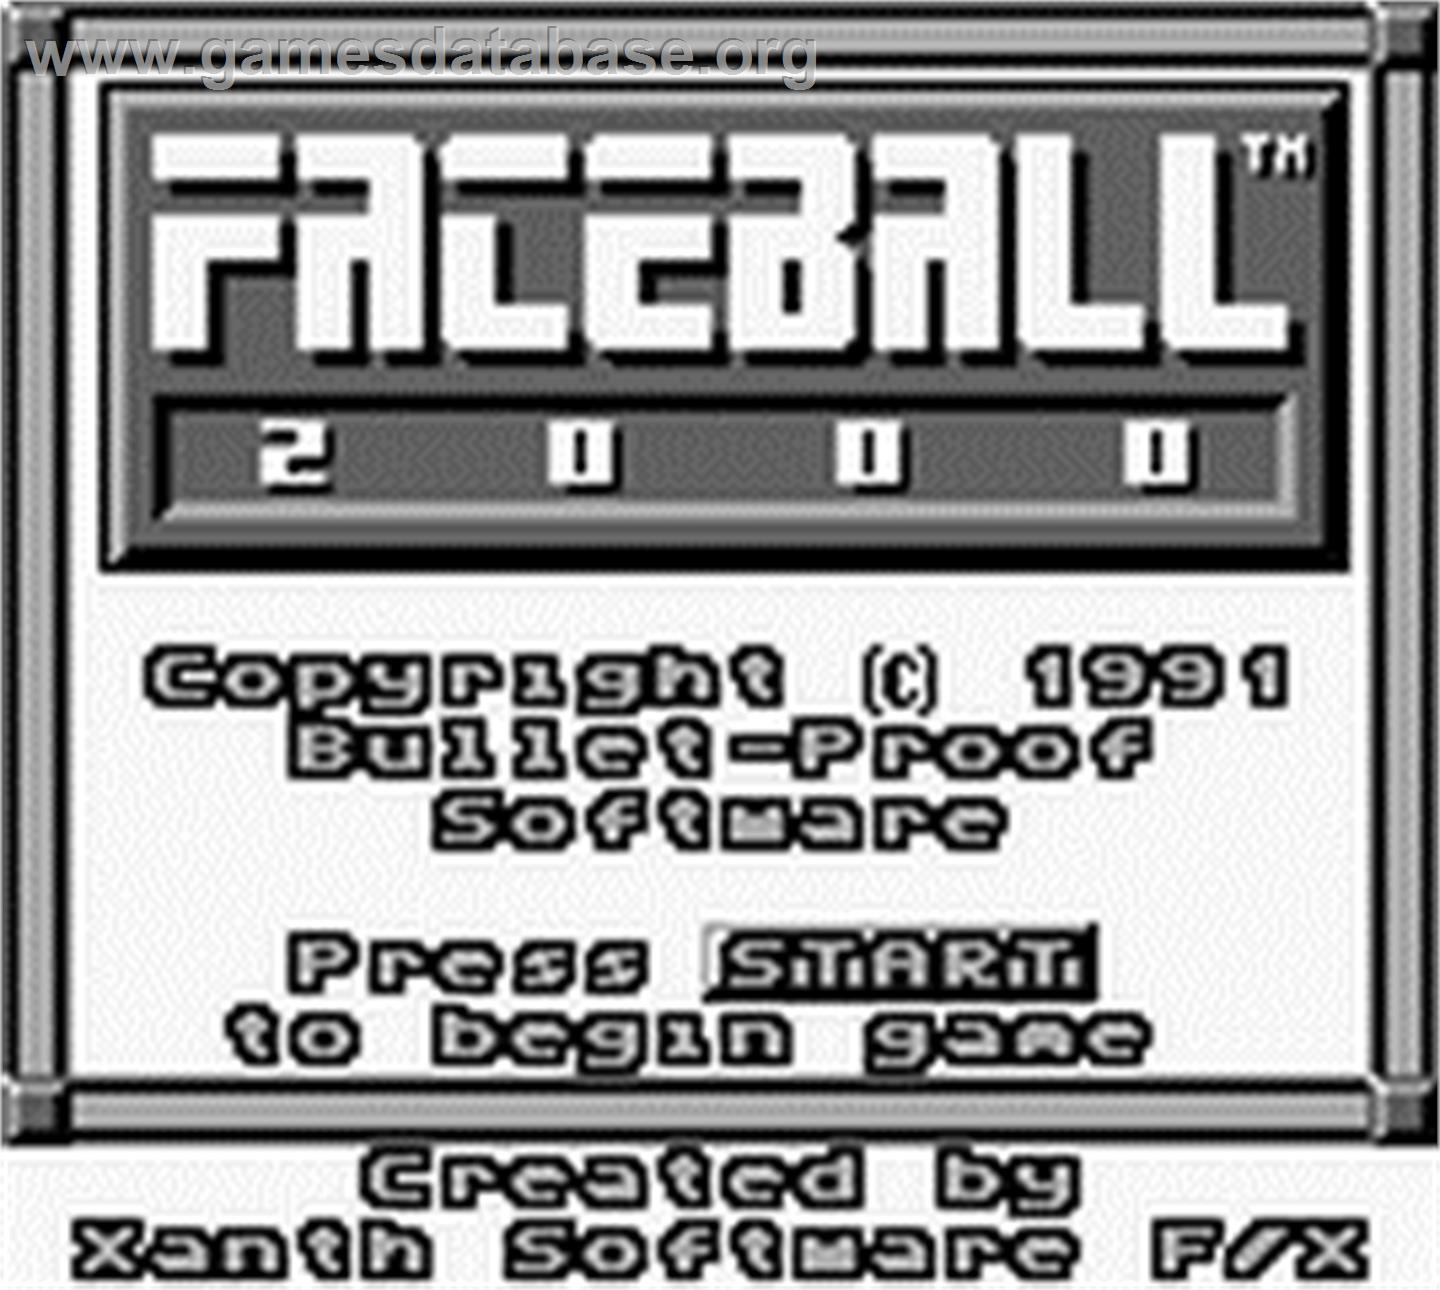 Faceball 2000 - Nintendo Game Boy - Artwork - Title Screen